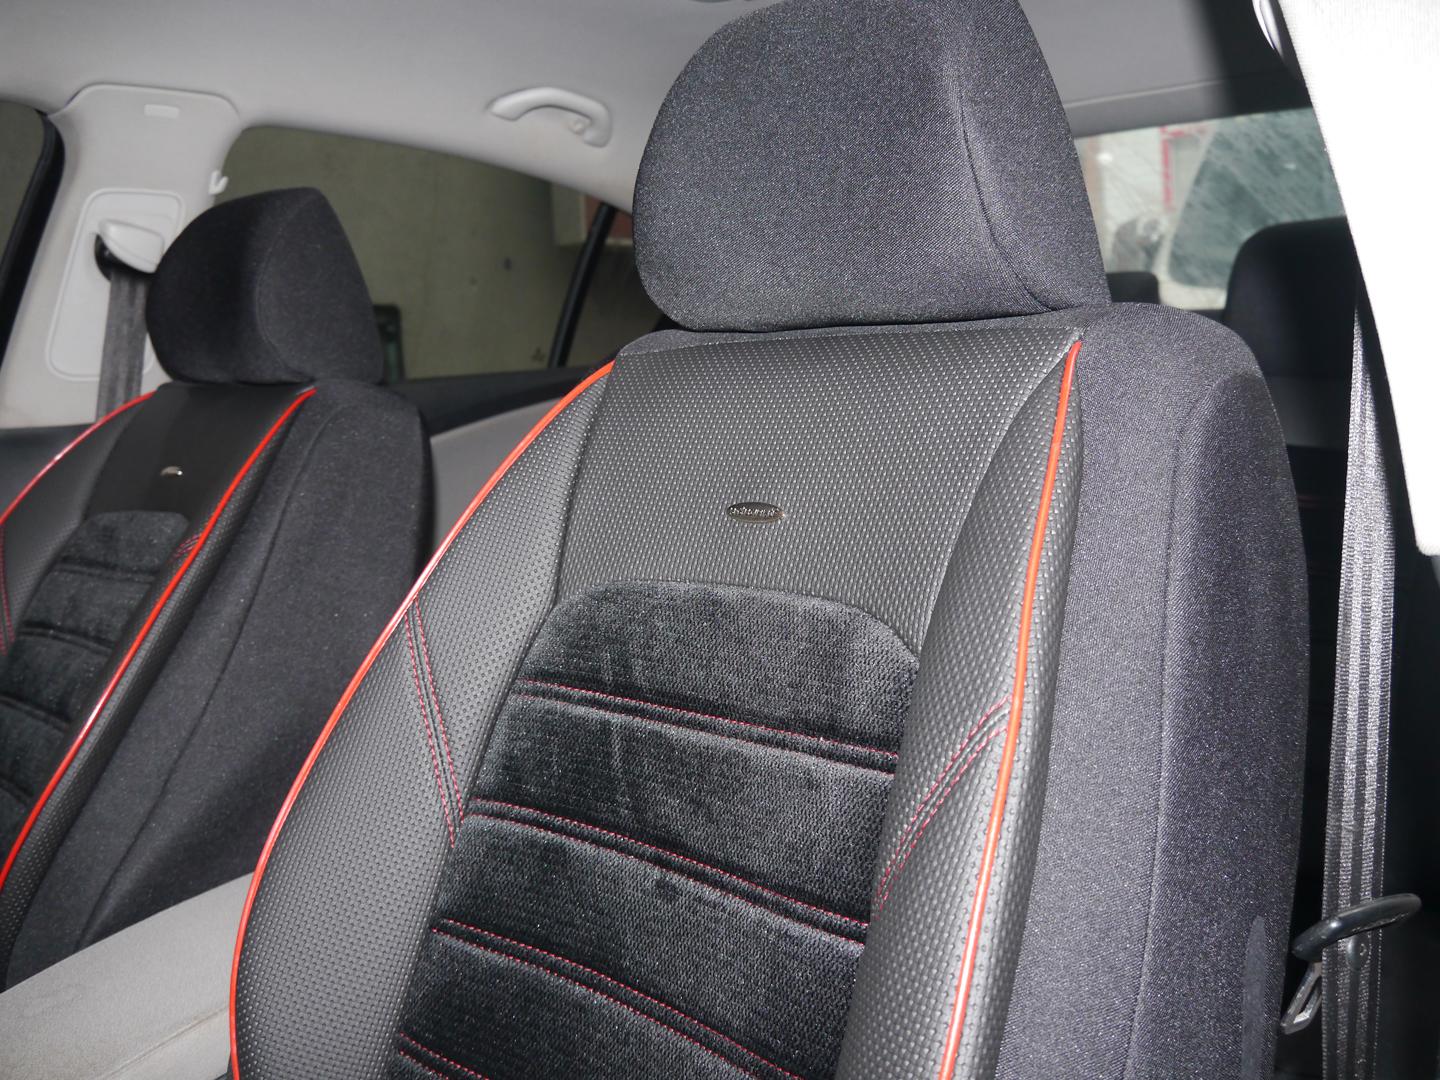 Sitzbezüge Schonbezüge Autositzbezüge für Ford Fiesta III No4